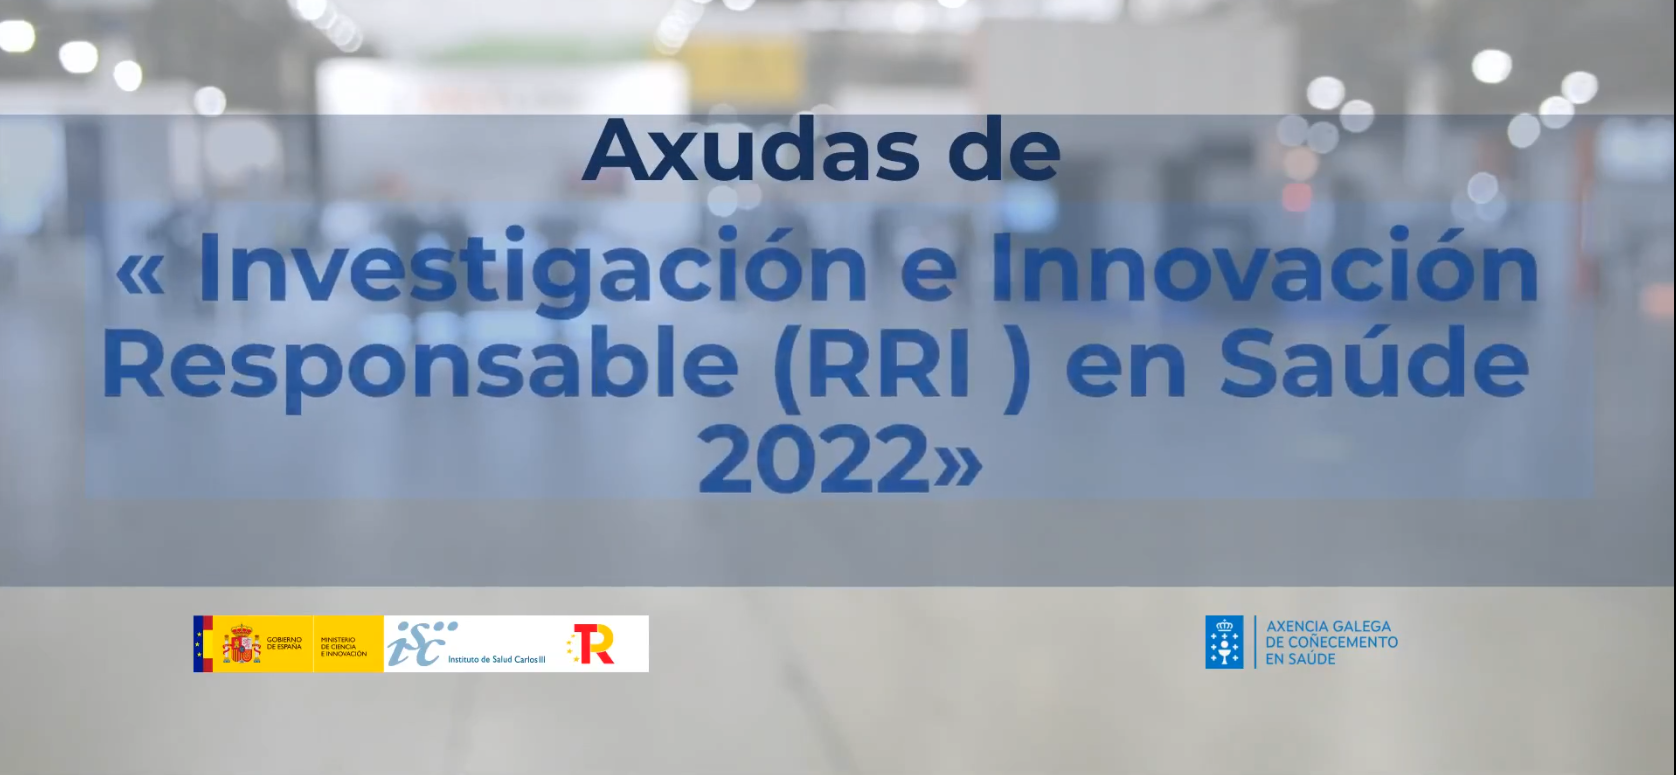 Visor  Investigación e Innovación Responsable en Saúde 2022 (RRI)